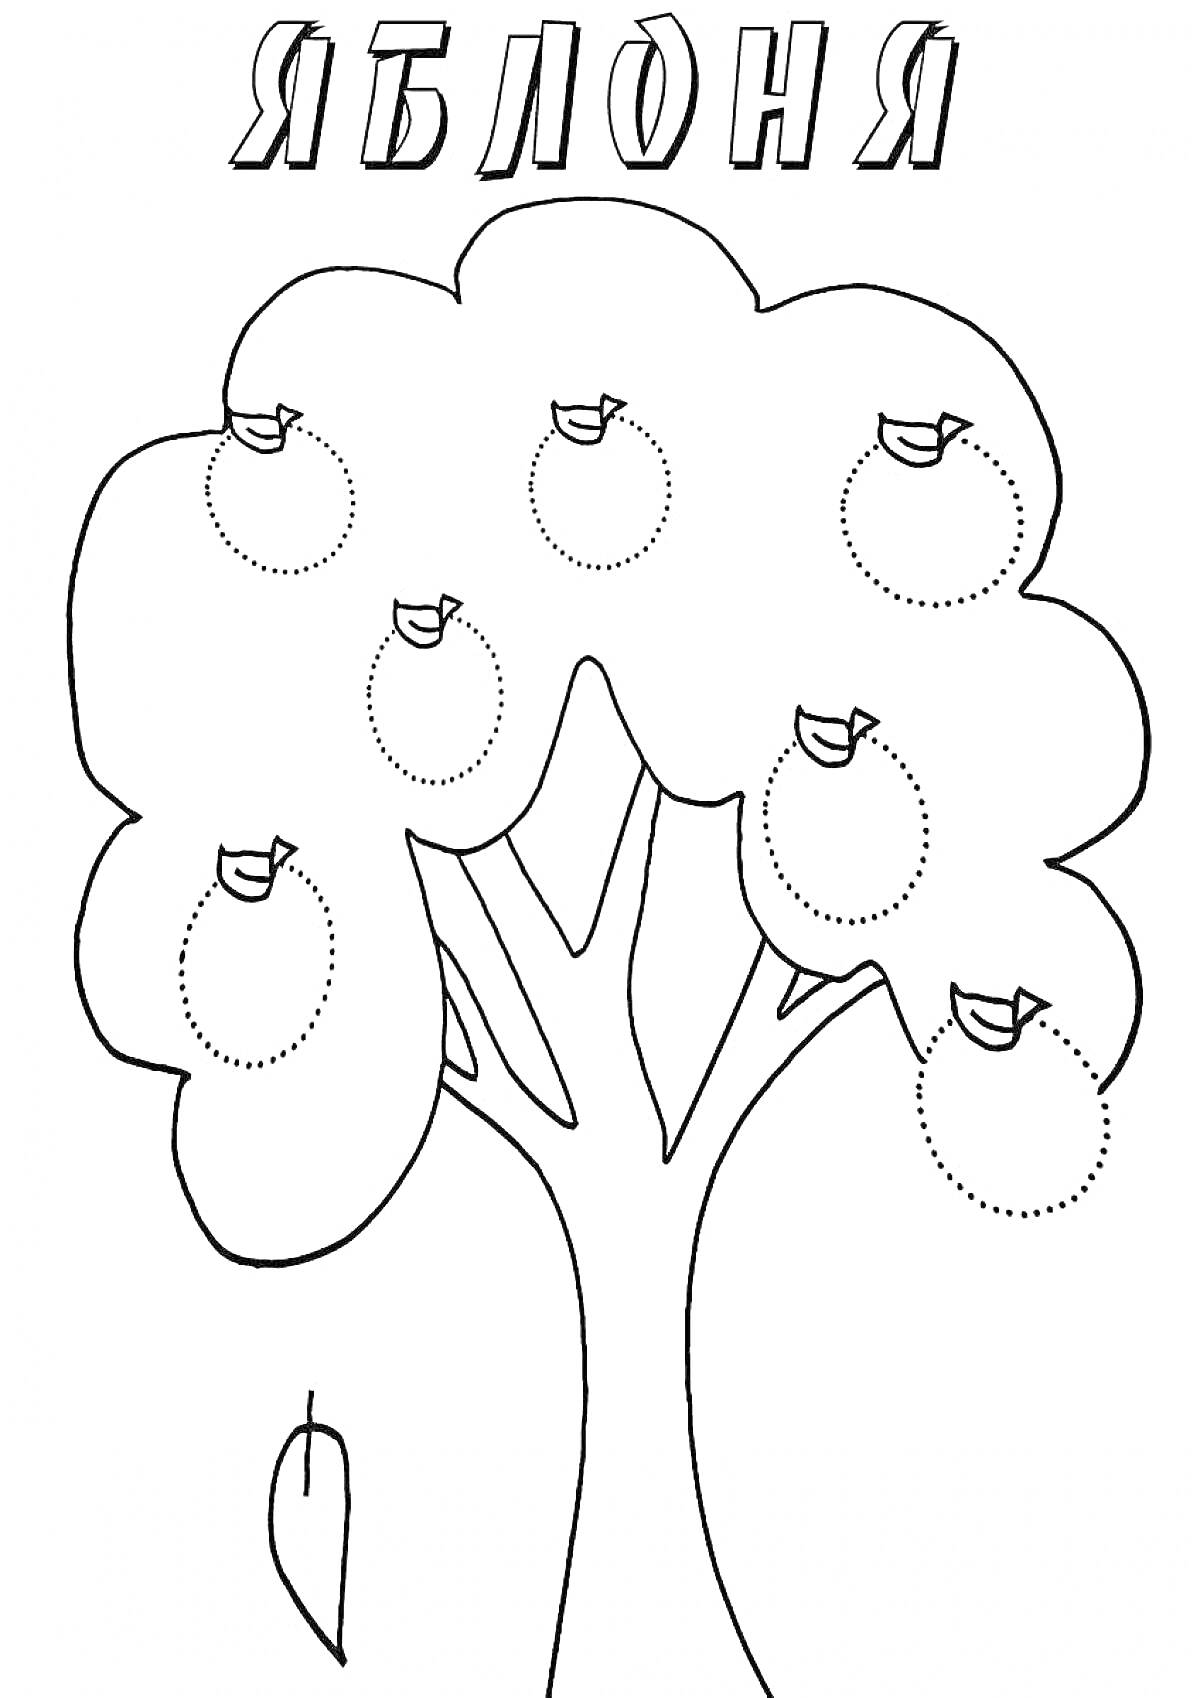 Раскраска Яблоня с яблоками и птицами на ветках, один упавший лист